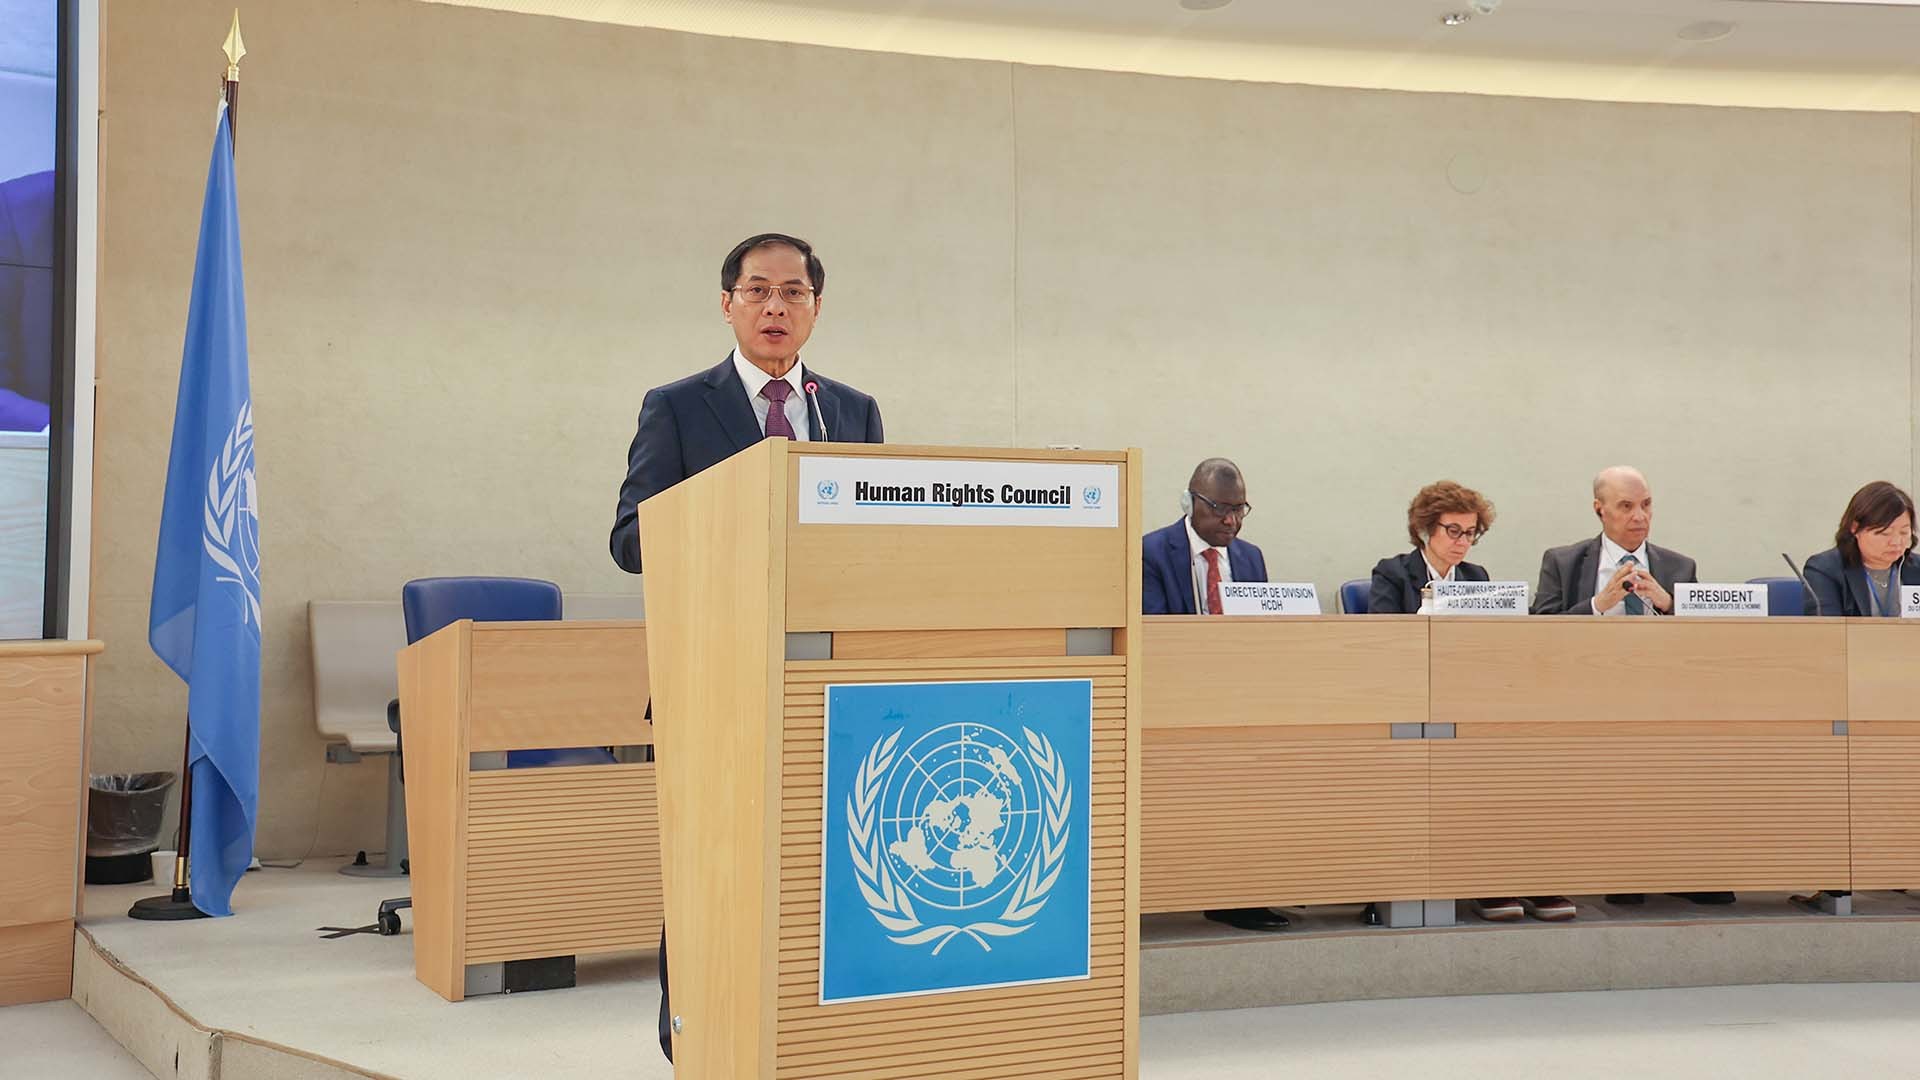 Bộ trưởng Bùi Thanh Sơn phát biểu tại Phiên họp cấp cao Khóa họp 55 Hội đồng Nhân quyền Liên hợp quốc, ngày 26/2 tại Geneva, Thụy Sỹ. (Ảnh: Nhất Phong)